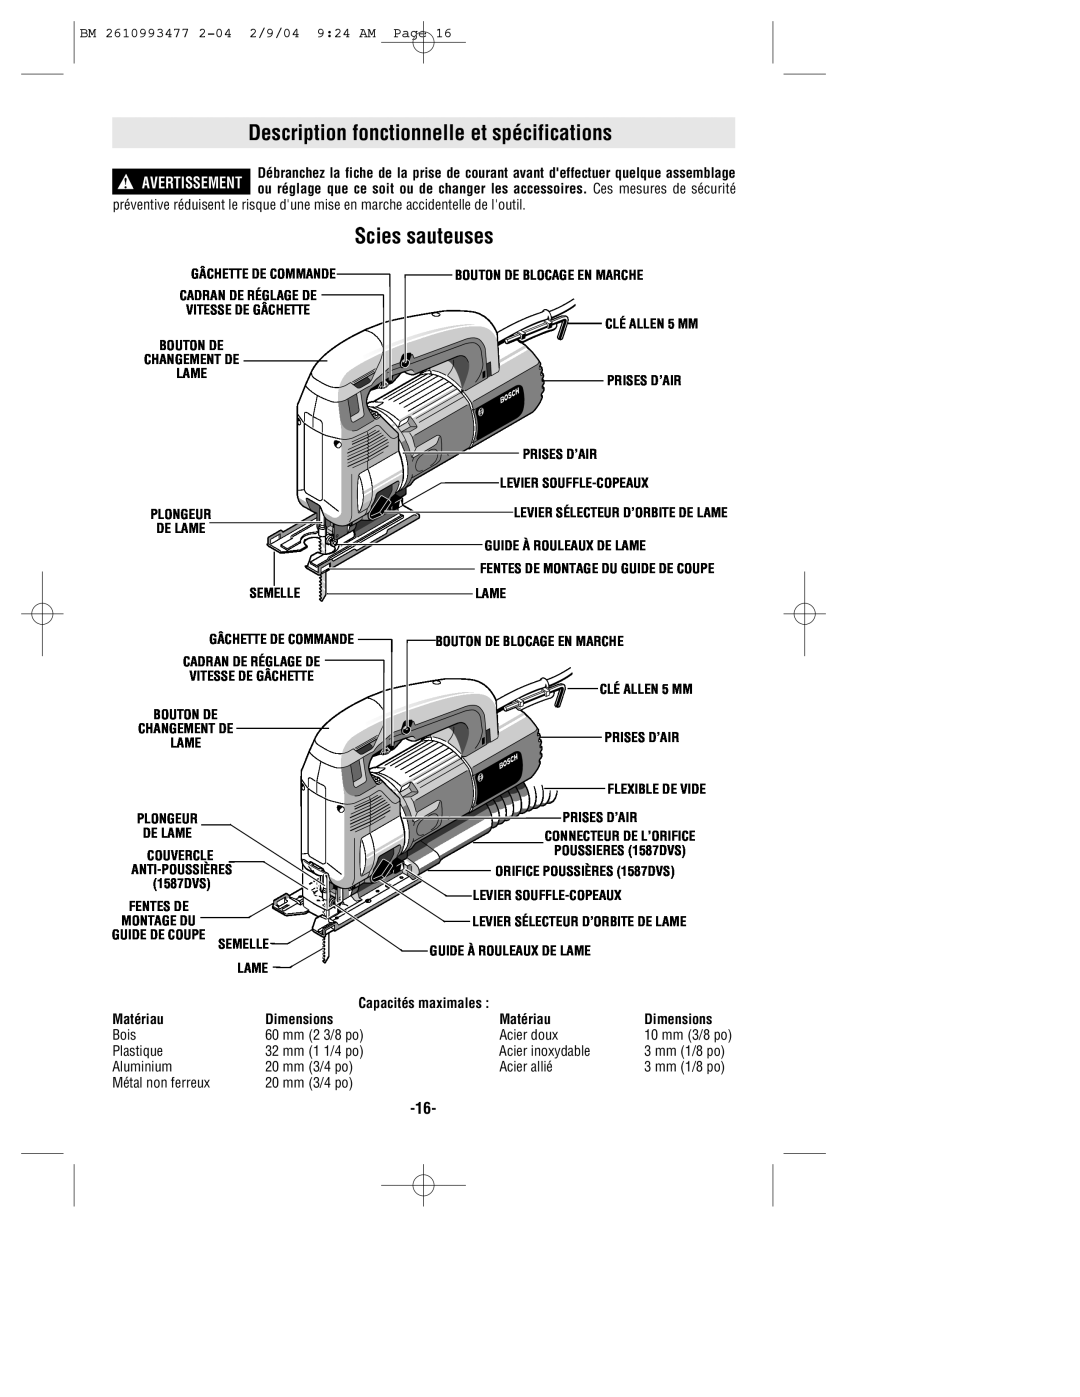 Bosch Power Tools 1587AVSK, 1587VS manual Description fonctionnelle et spécifications, Scies sauteuses, Matériau, Dimensions 